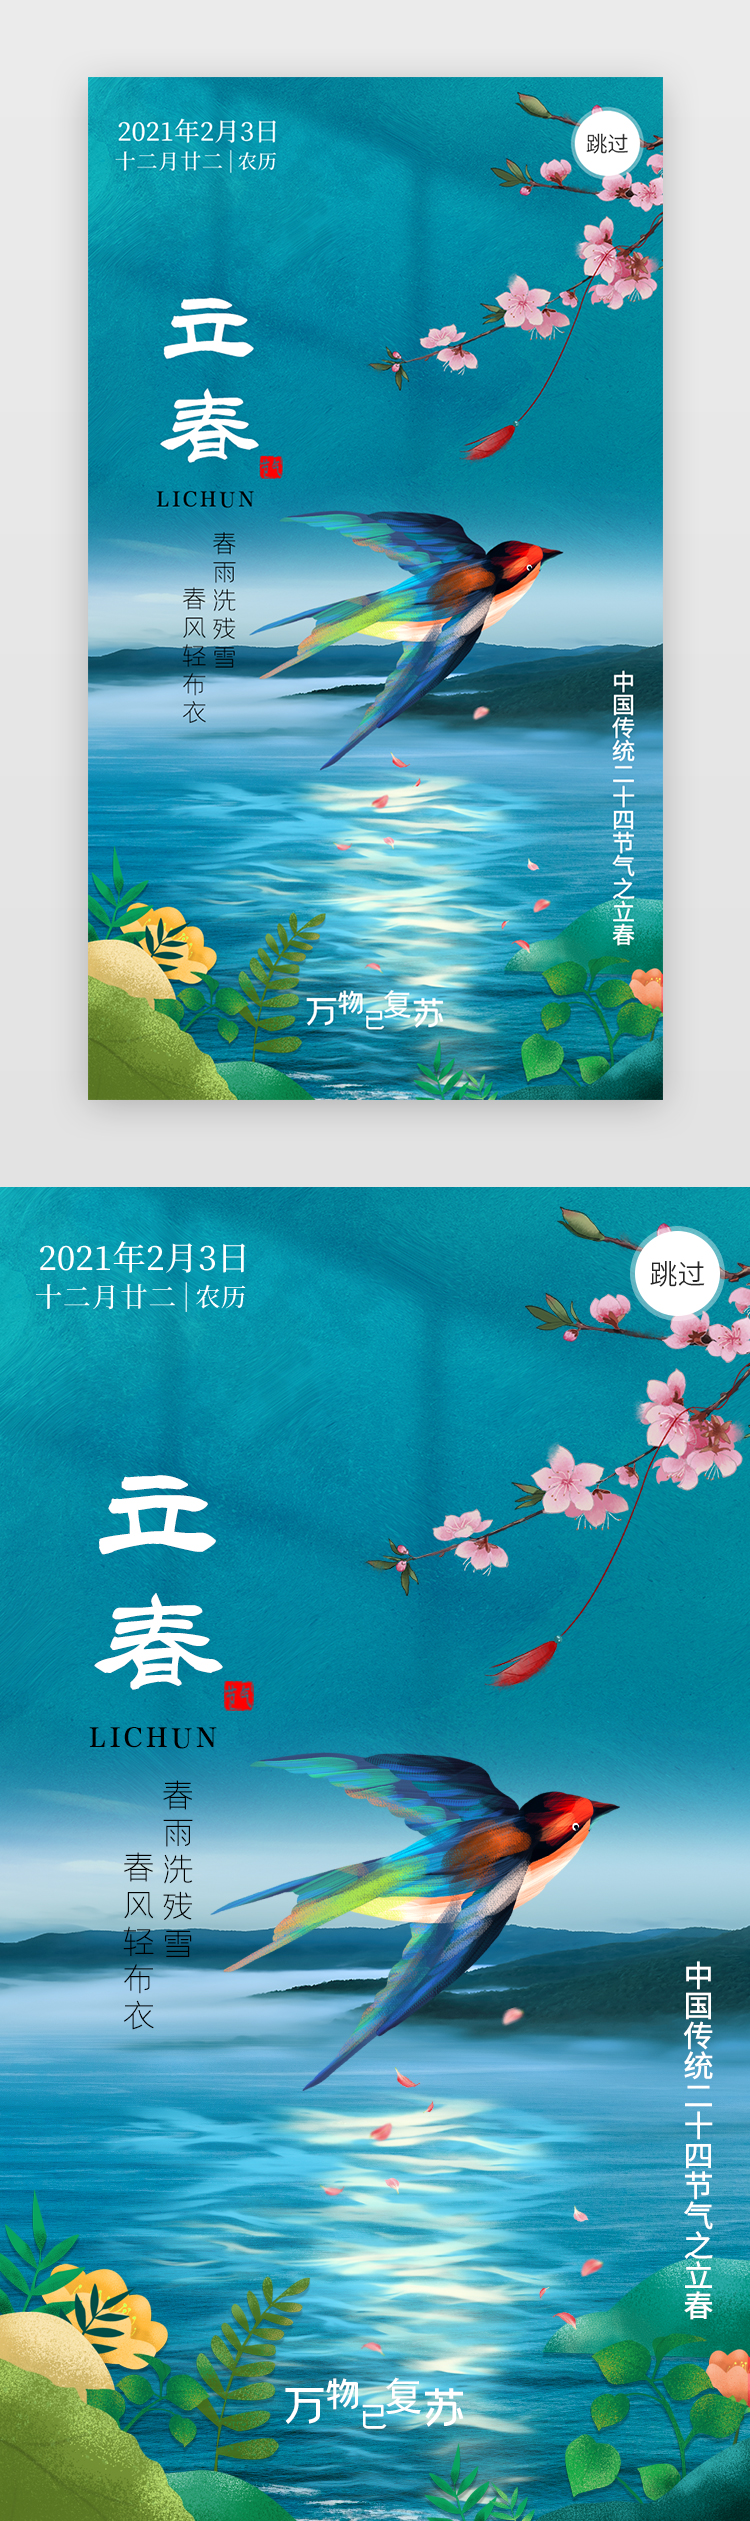 立春app闪屏写实蓝绿色燕子、湖水图片